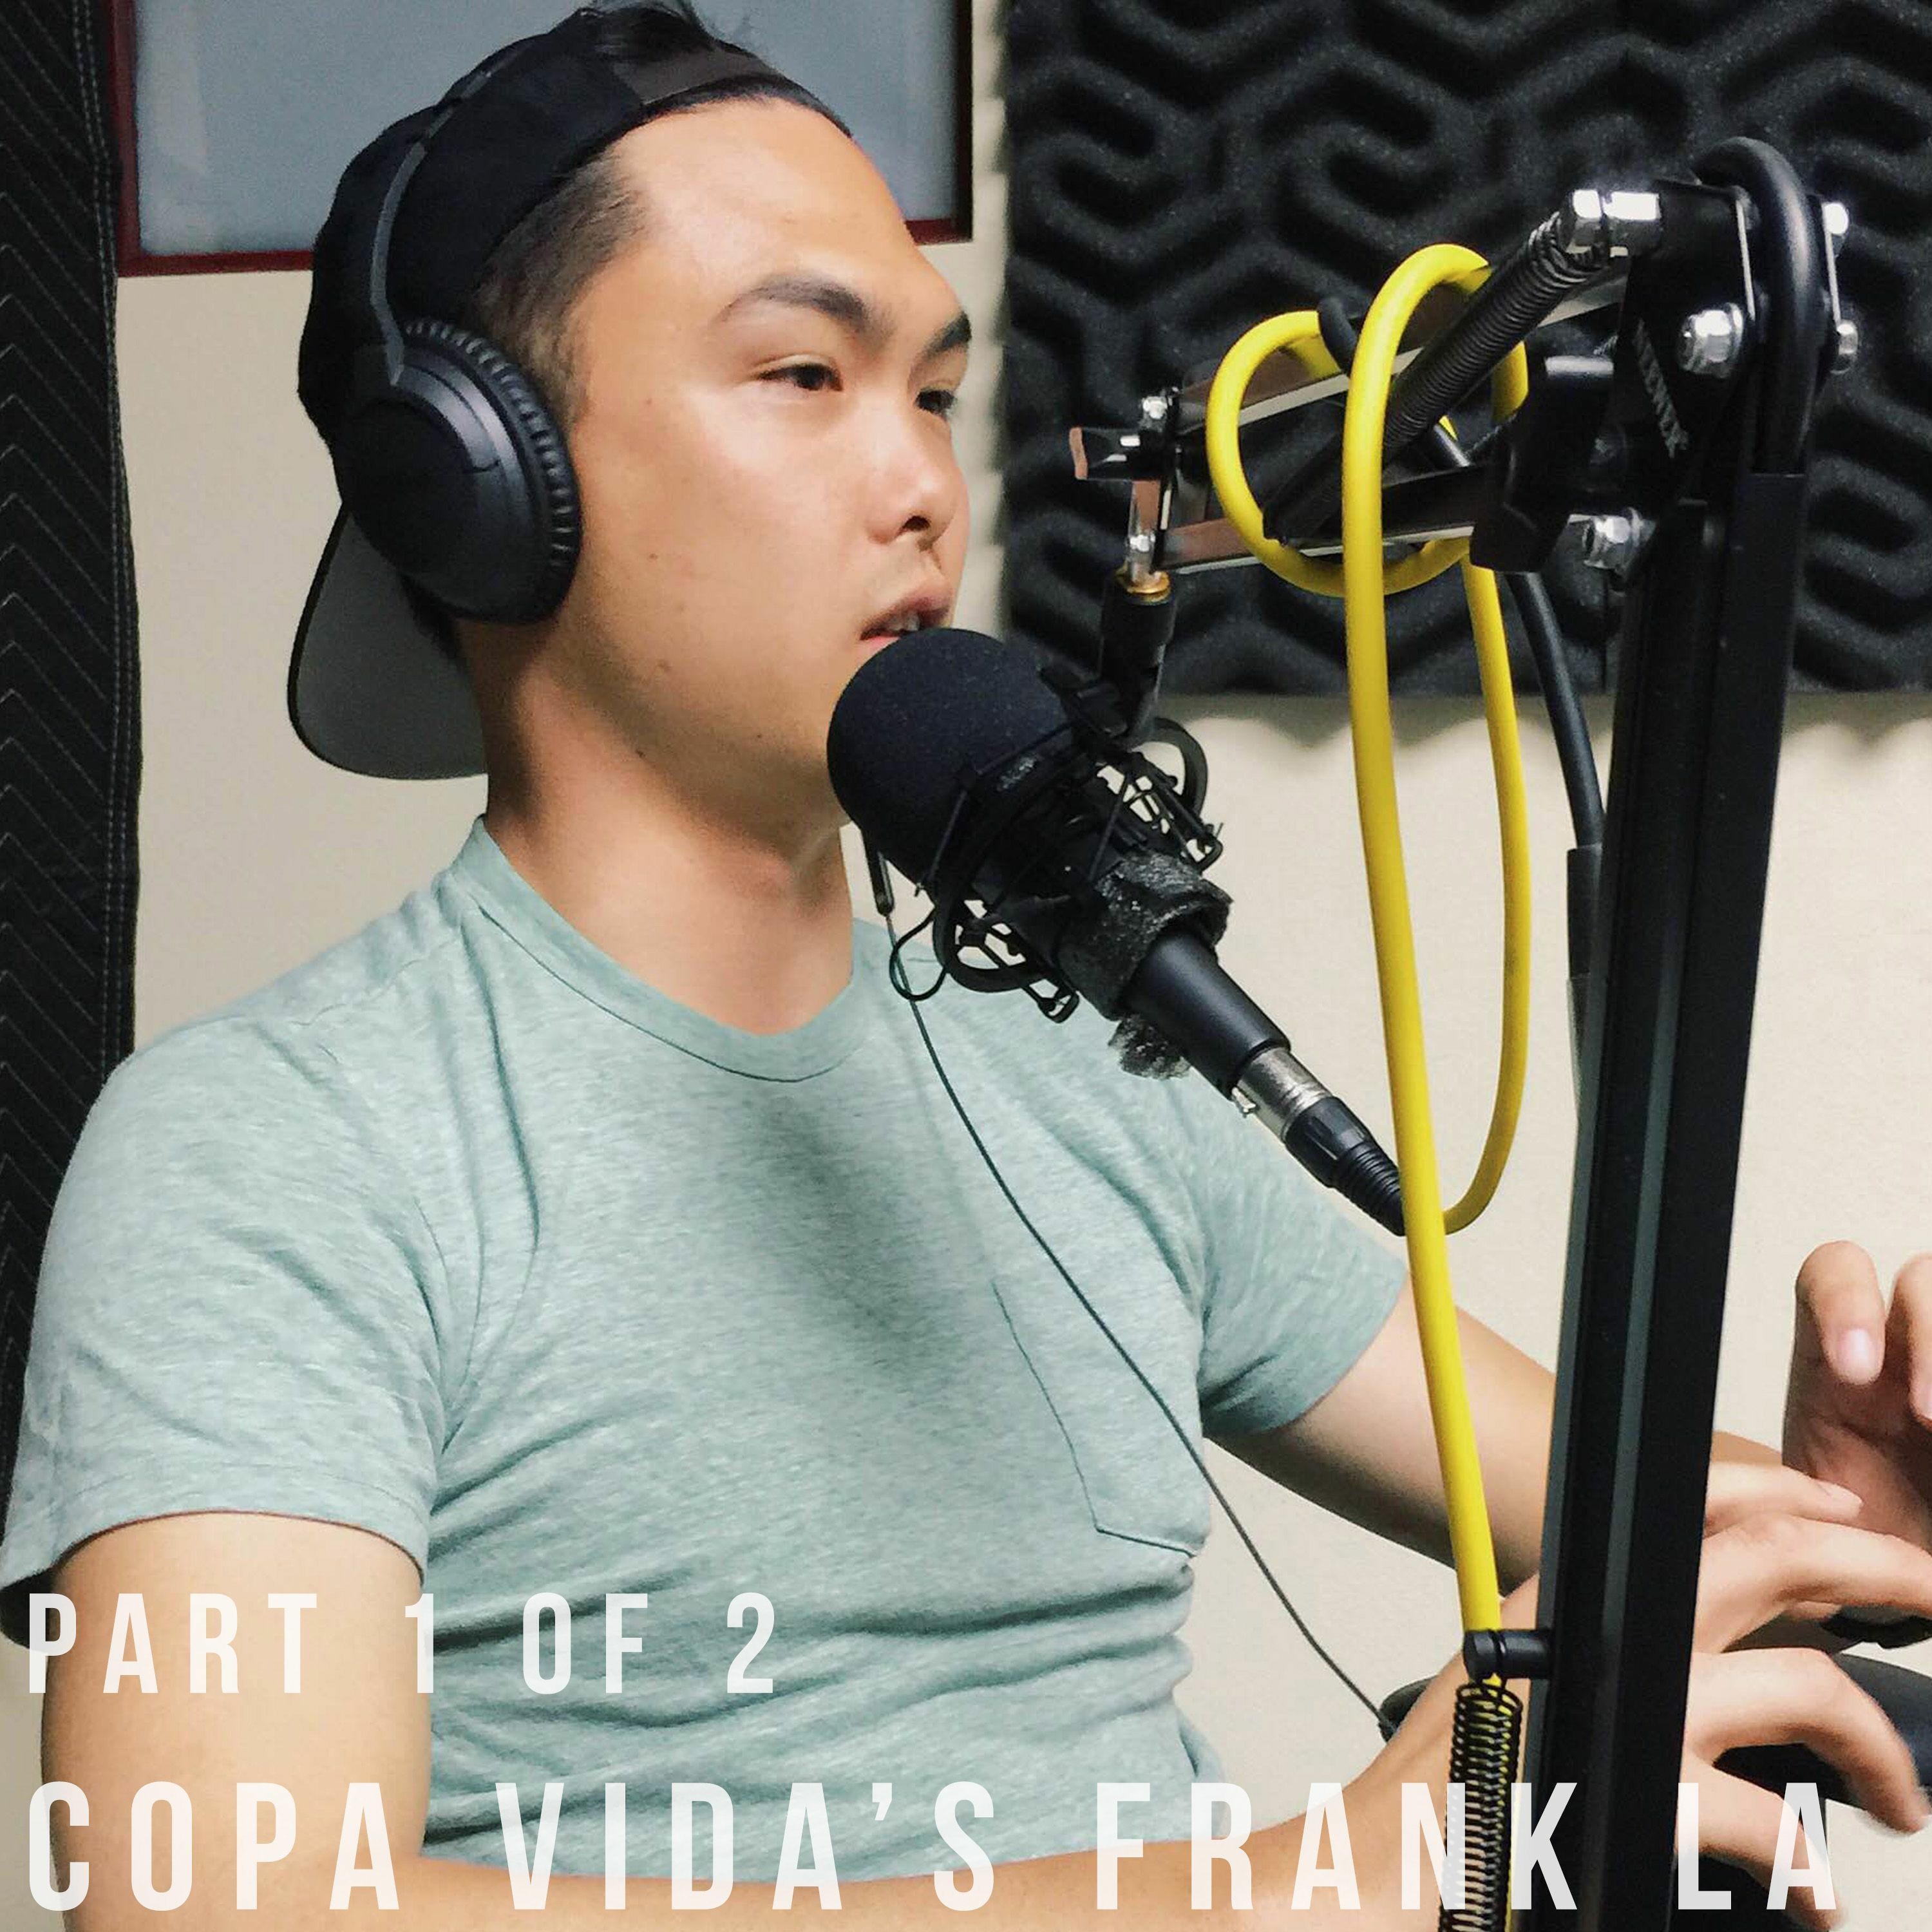 Frank La of Copa Vida Go Part 1 of 2